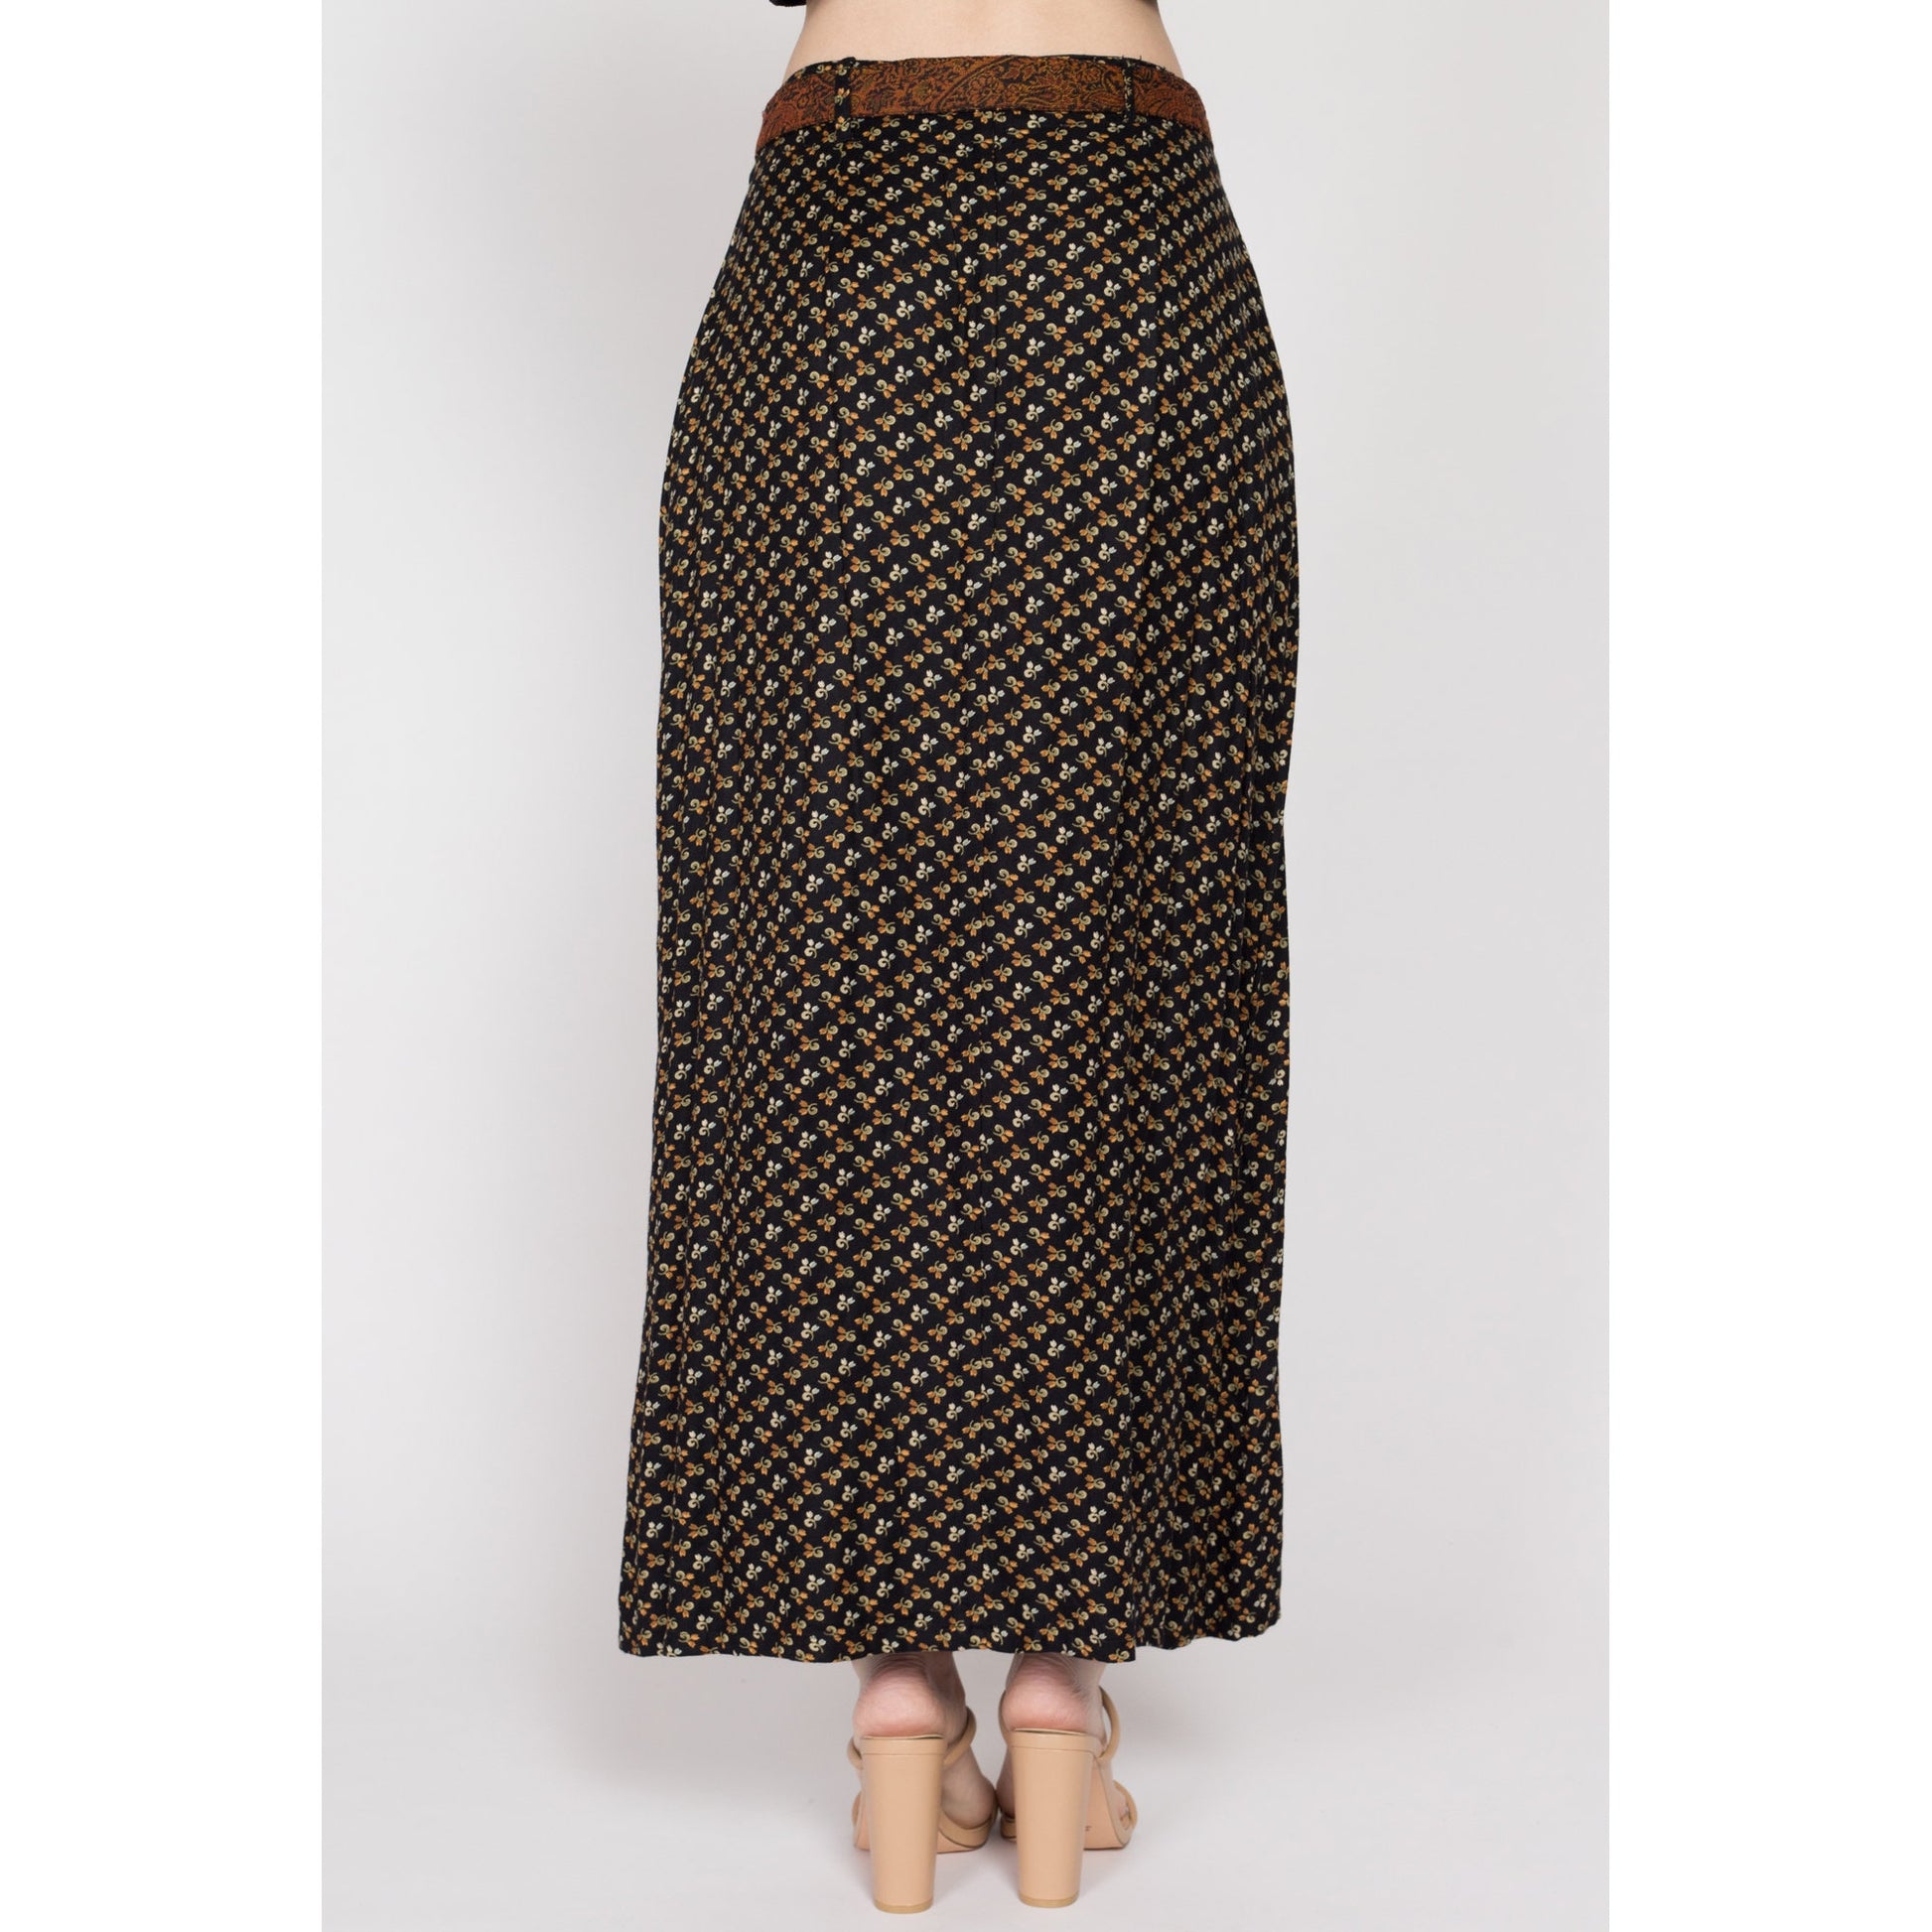 Sm-Med 90s April Cornell Black Floral Tassel Belt Maxi Skirt 28" | Vintage High Waisted A Line Boho Long Rayon Skirt